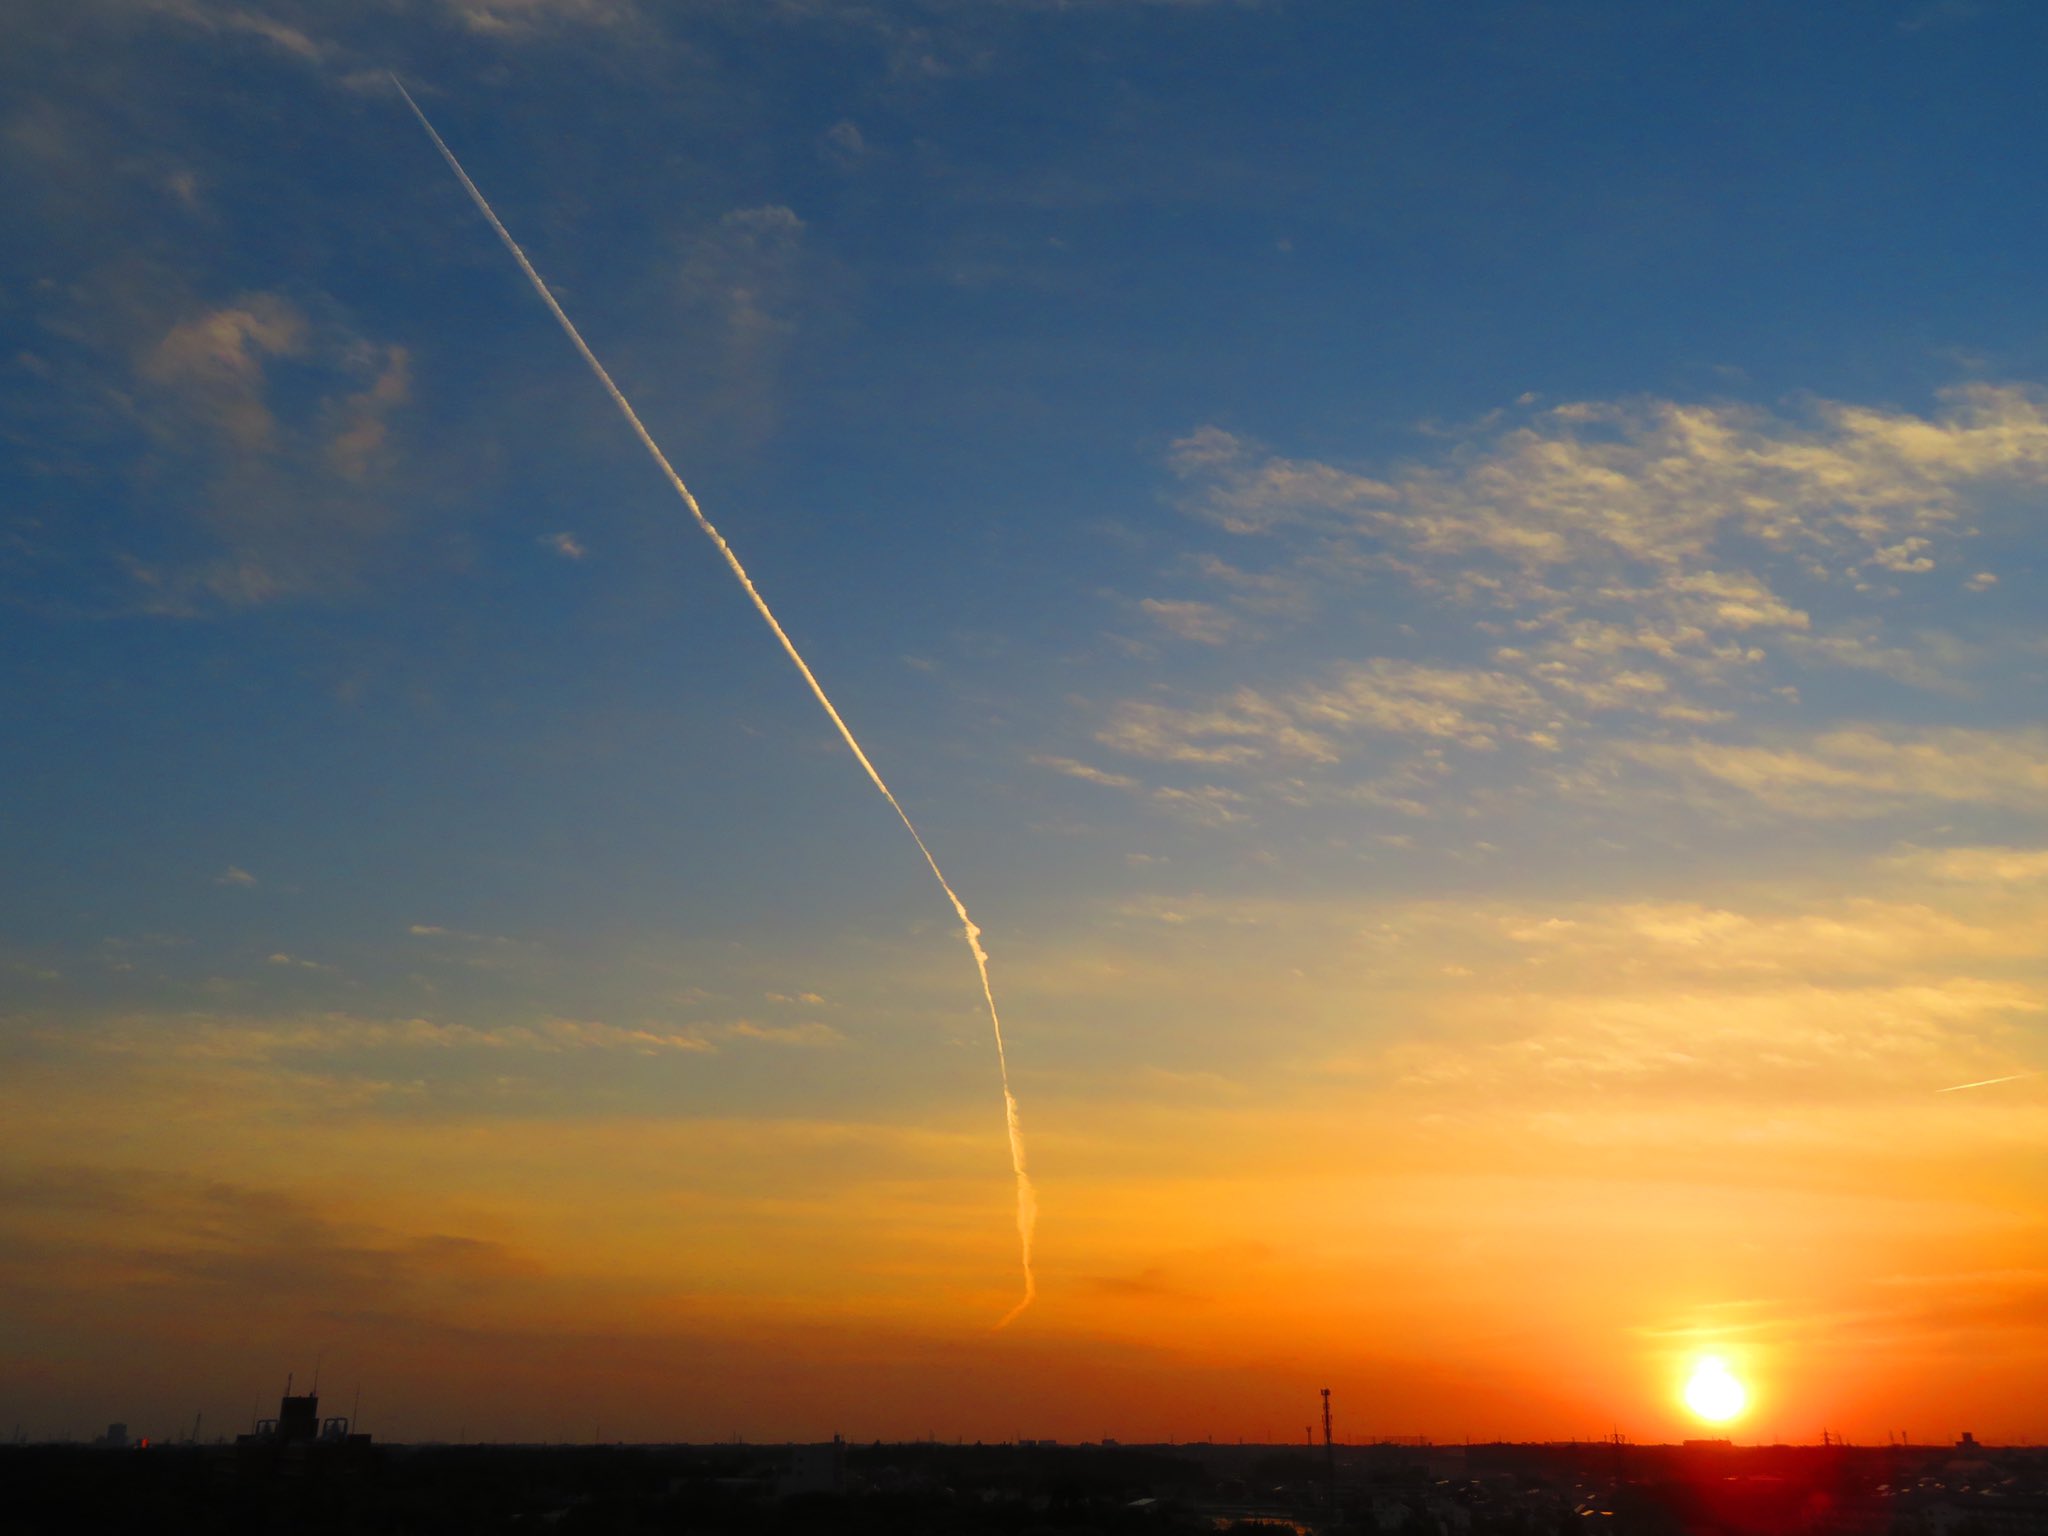 荒木健太郎 夕空の飛行機雲 見ている方向と同じ向きに飛ぶ飛行機雲 は 空に立っているように見えます ロケットみたい 上空が湿っているので飛行機雲が成長して巻雲に変化していきました T Co Fzyjnjyg1h Twitter